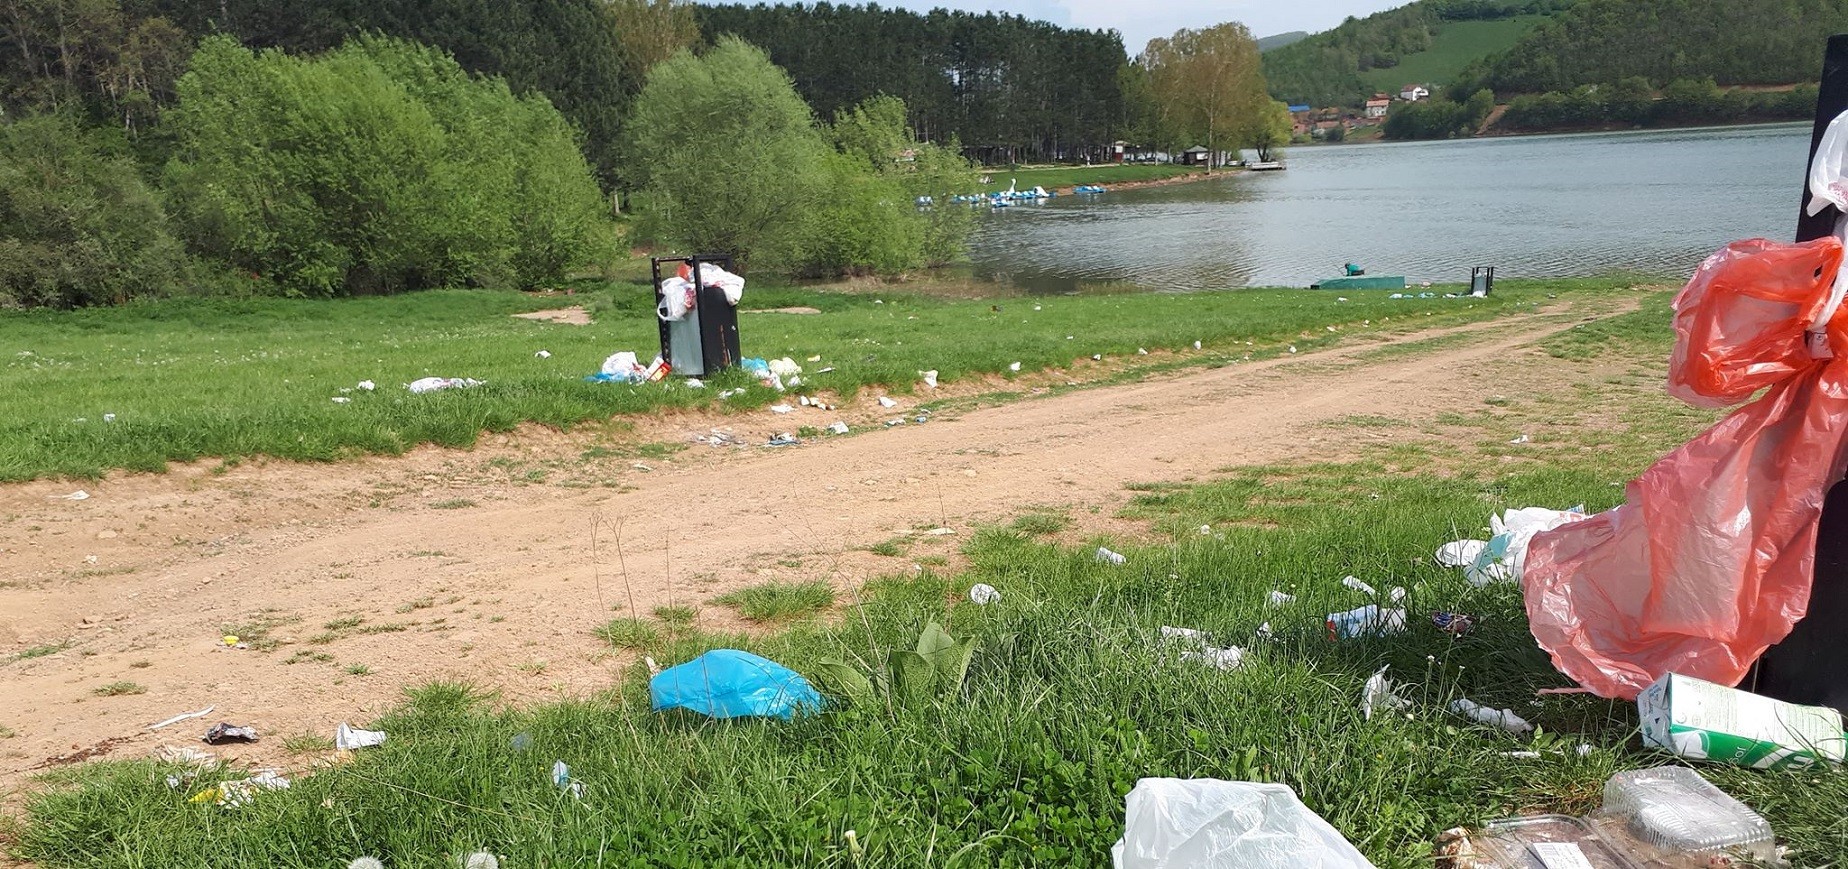 Mbahet aksion për pastrimin rreth liqenit “Batllava” në Orllan   